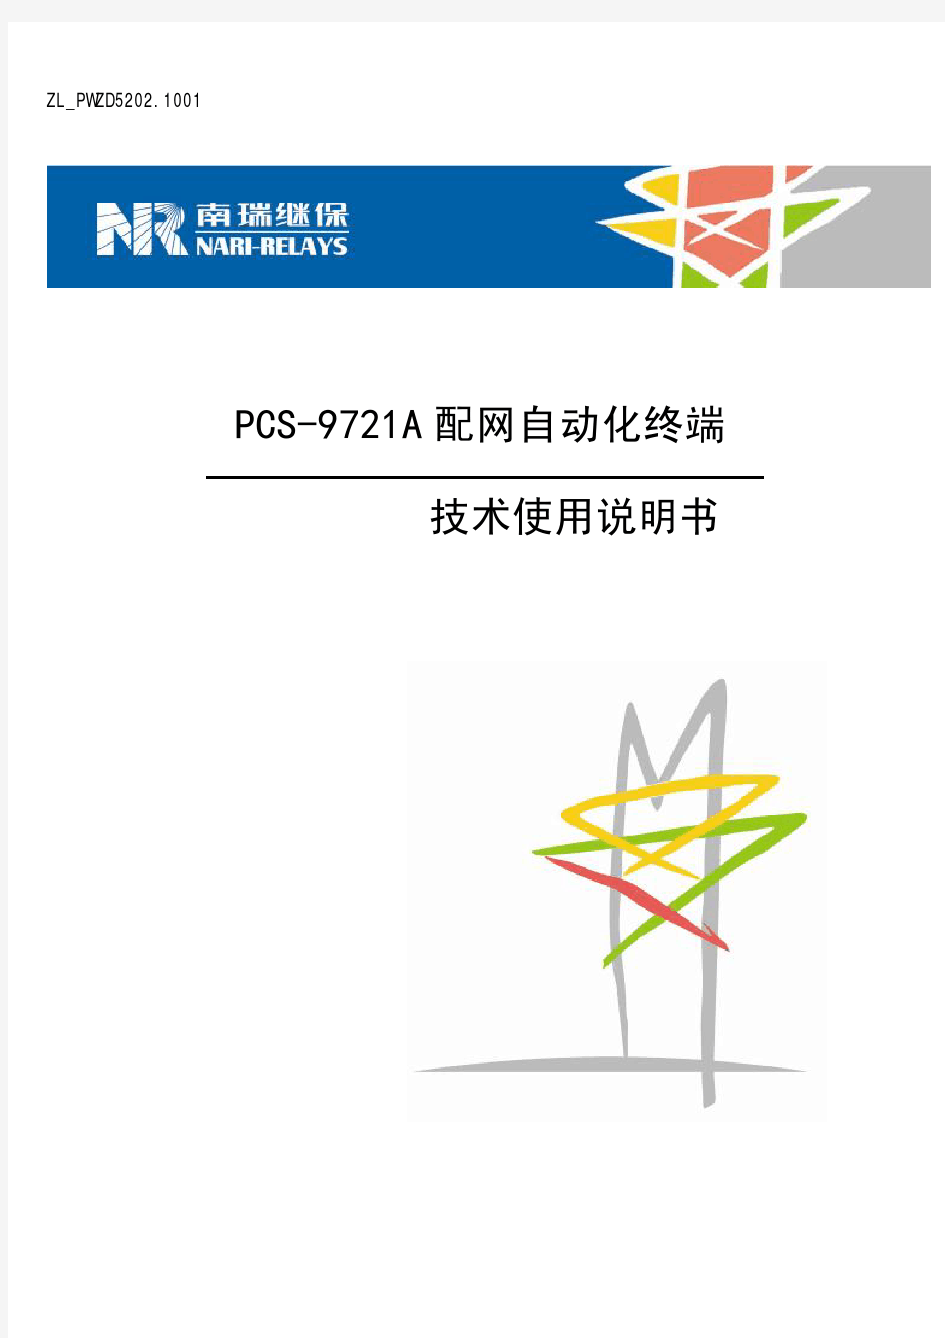 PCS-9721A配网自动化终端技术使用说明